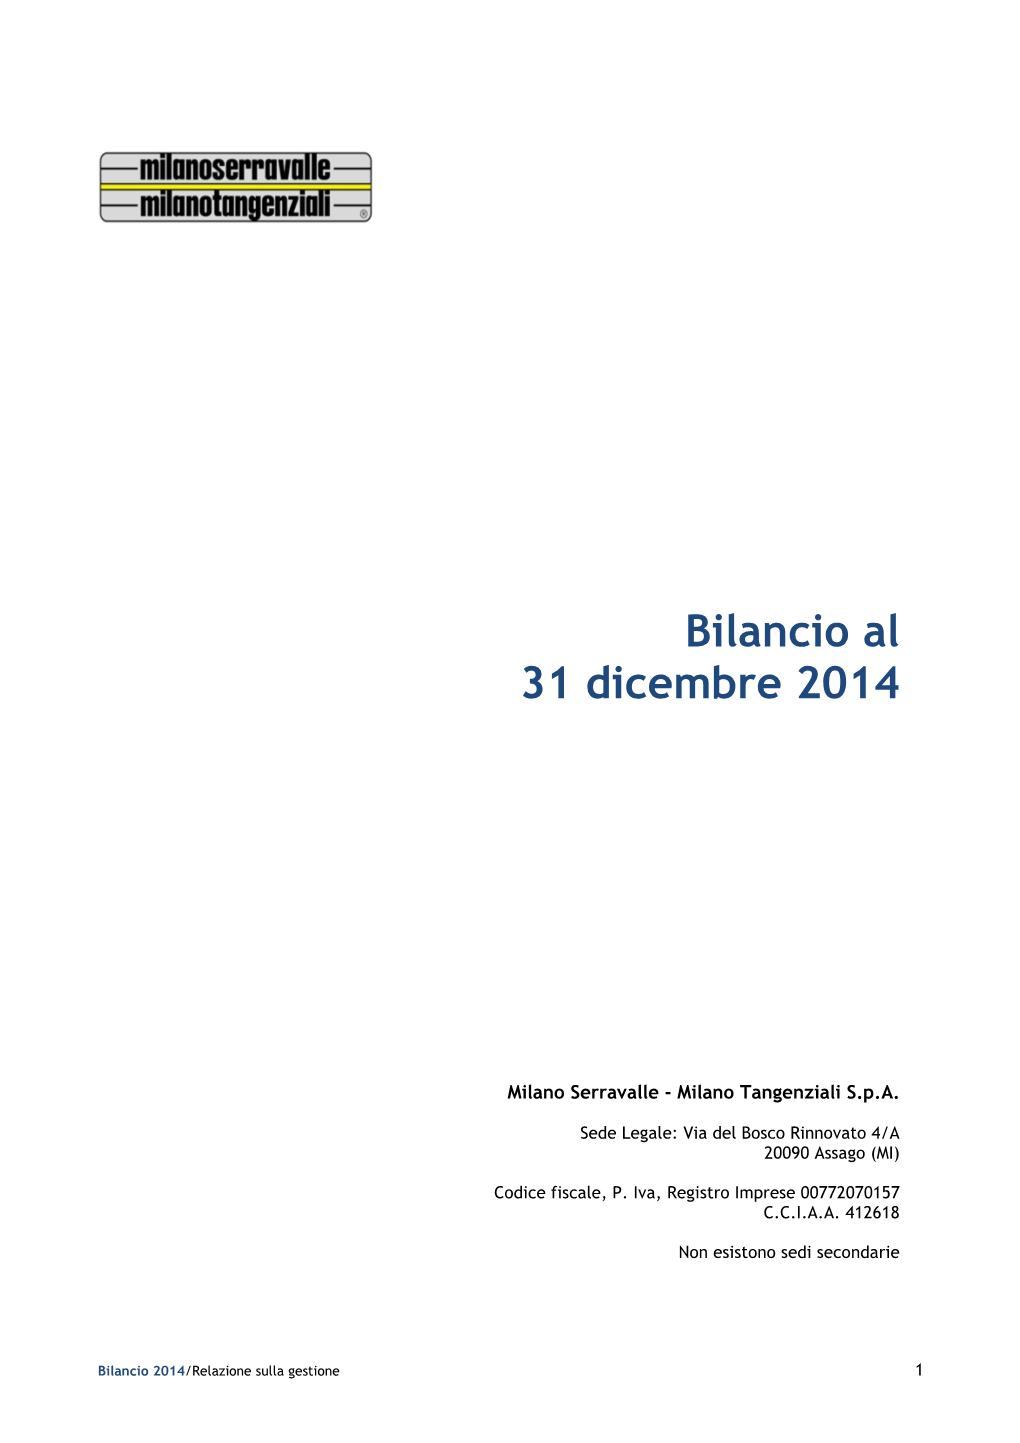 Bilancio Al 31 Dicembre 2014